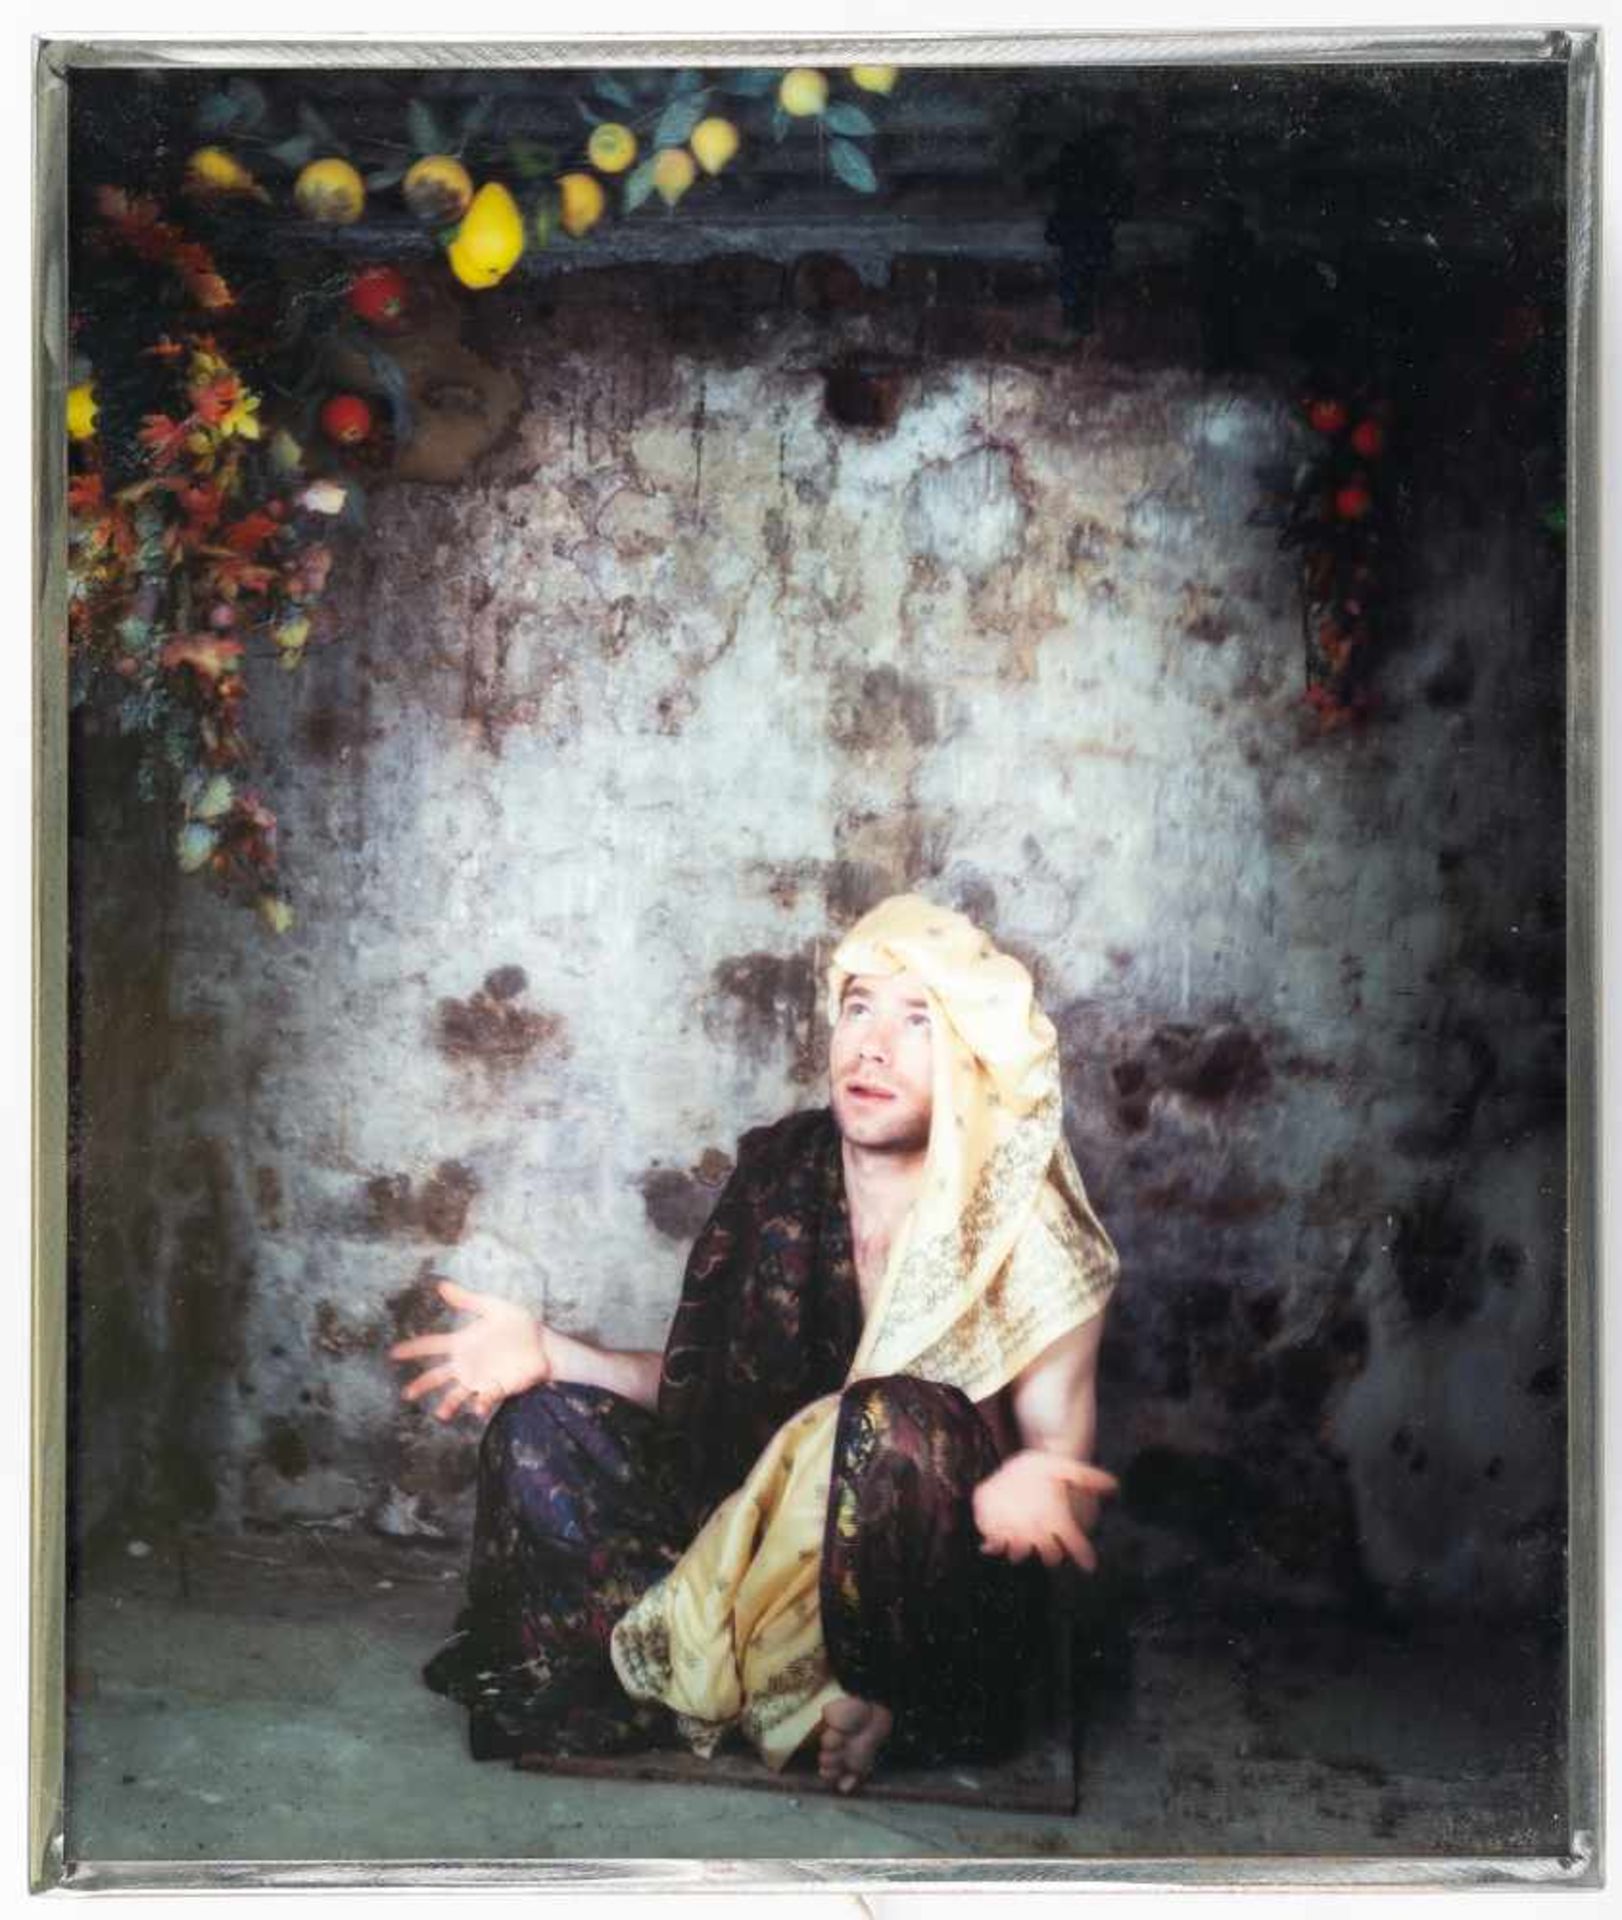 Mat CollishawSelf Portrait3D-Farbdiapositiv im Leuchtkasten. (1997). Ca. 51 x 43,5 x 7 cm. - Image 2 of 4